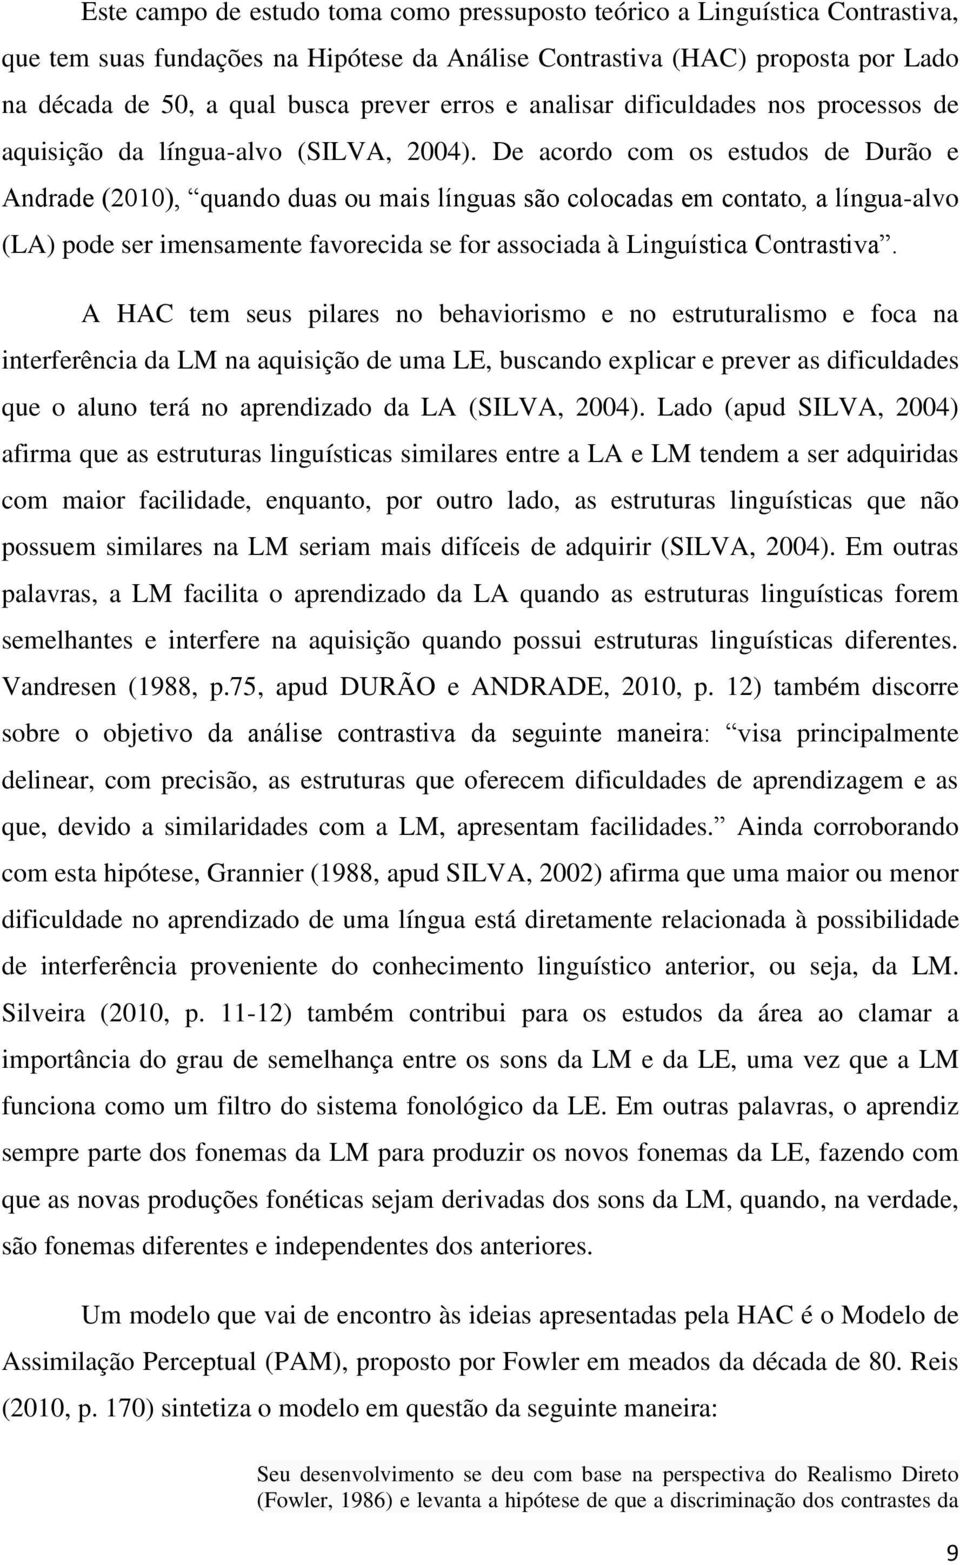 De acordo com os estudos de Durão e Andrade (2010), quando duas ou mais línguas são colocadas em contato, a língua-alvo (LA) pode ser imensamente favorecida se for associada à Linguística Contrastiva.